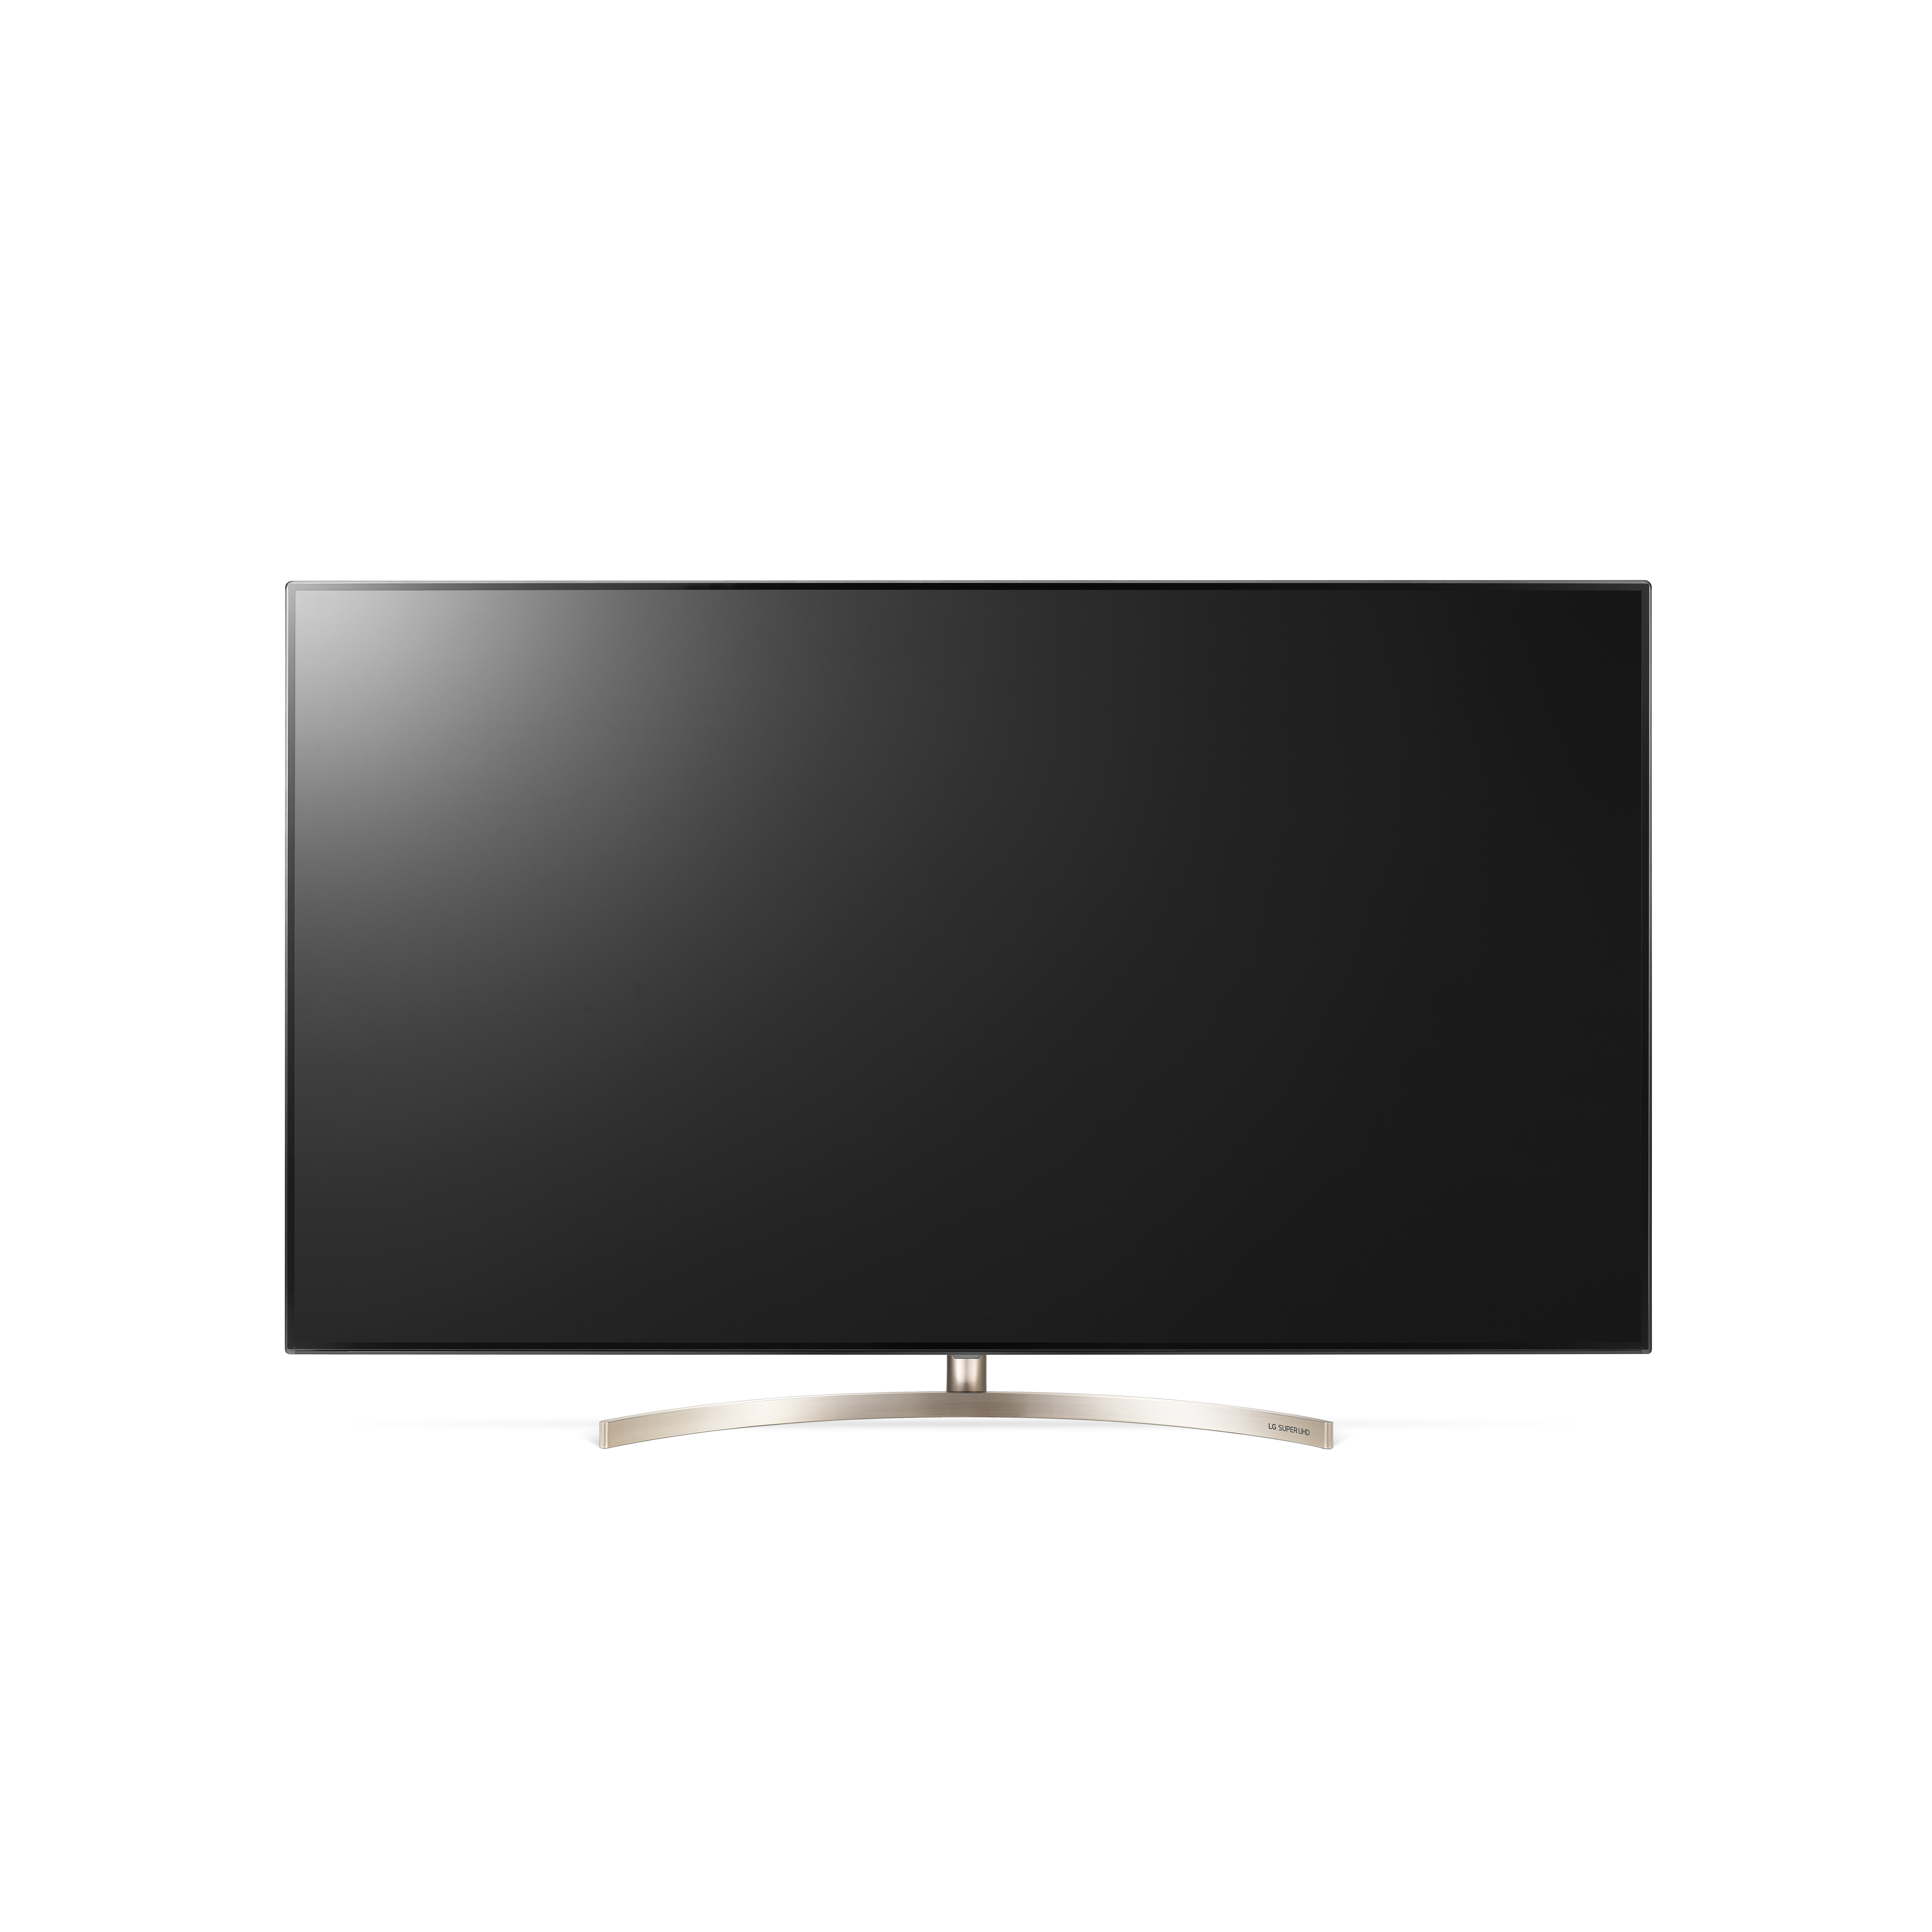 LG 65SK9500PLA TV